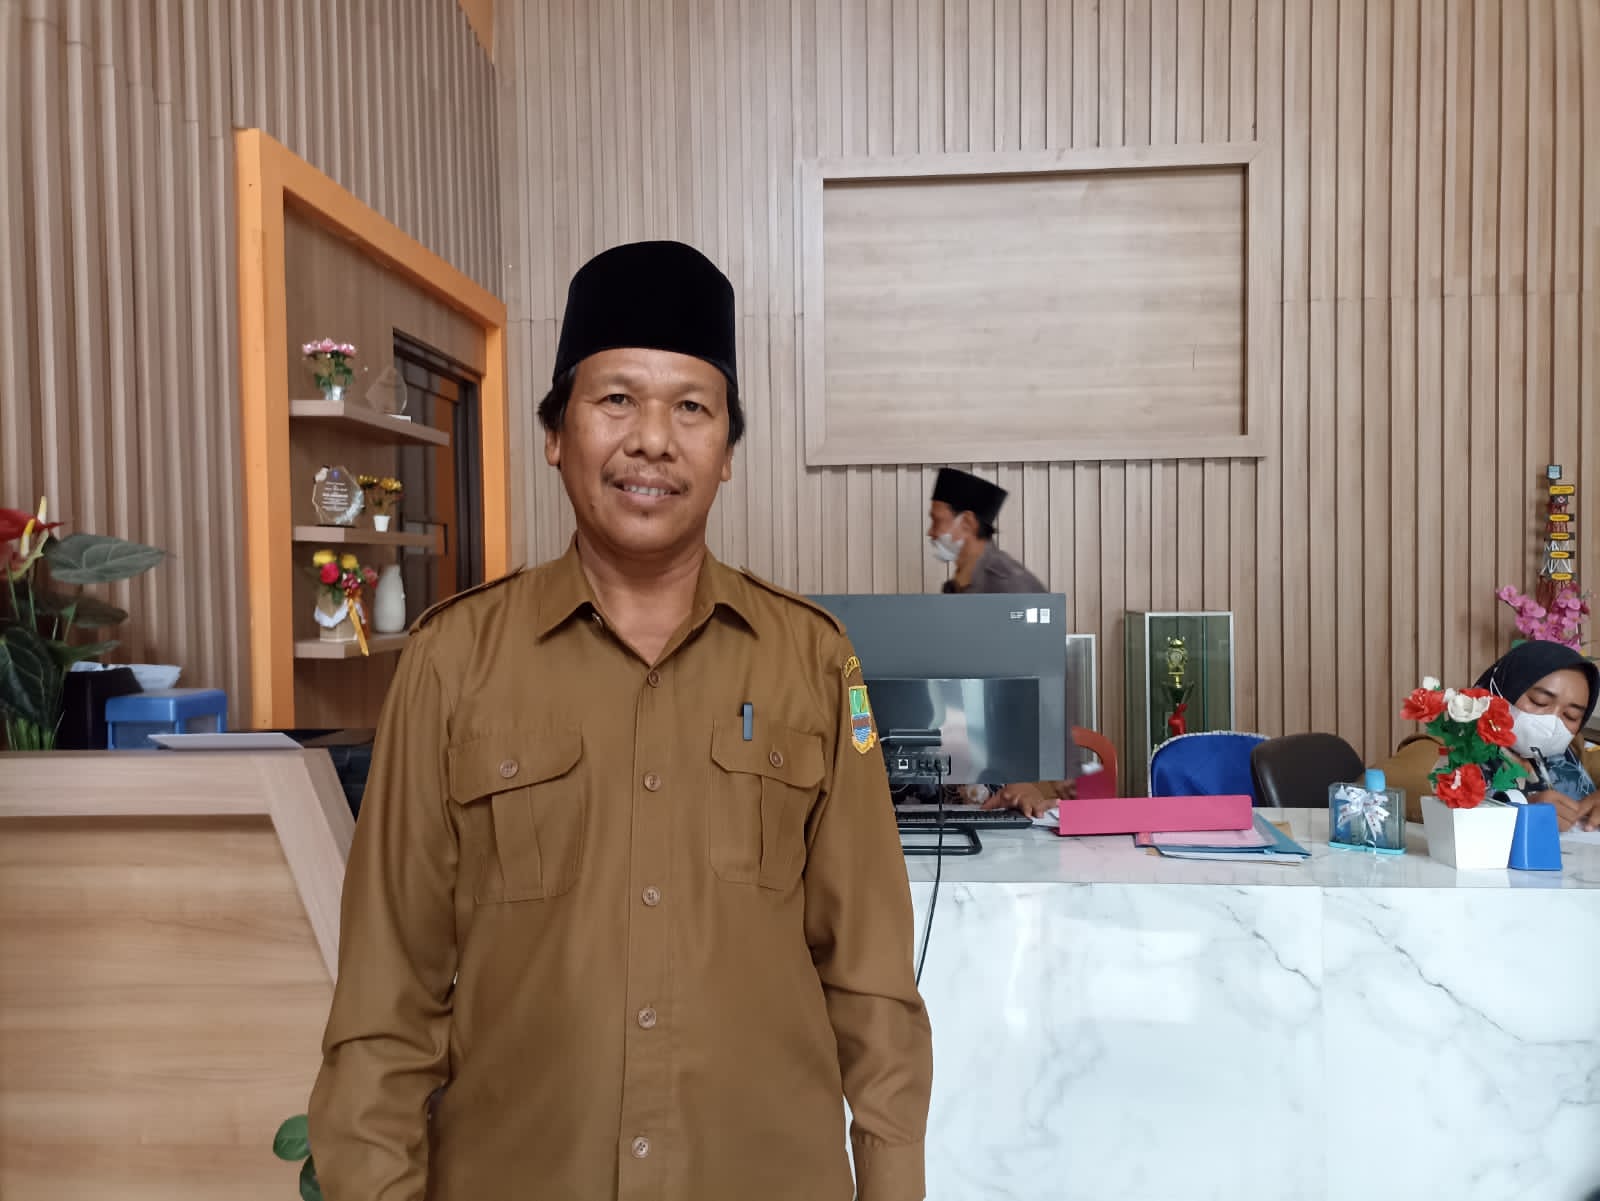 Foto: Sopyan Hadi, Plt. Kades Lambangsari, Kec. Tambun Selatan, Kab. Bekasi.